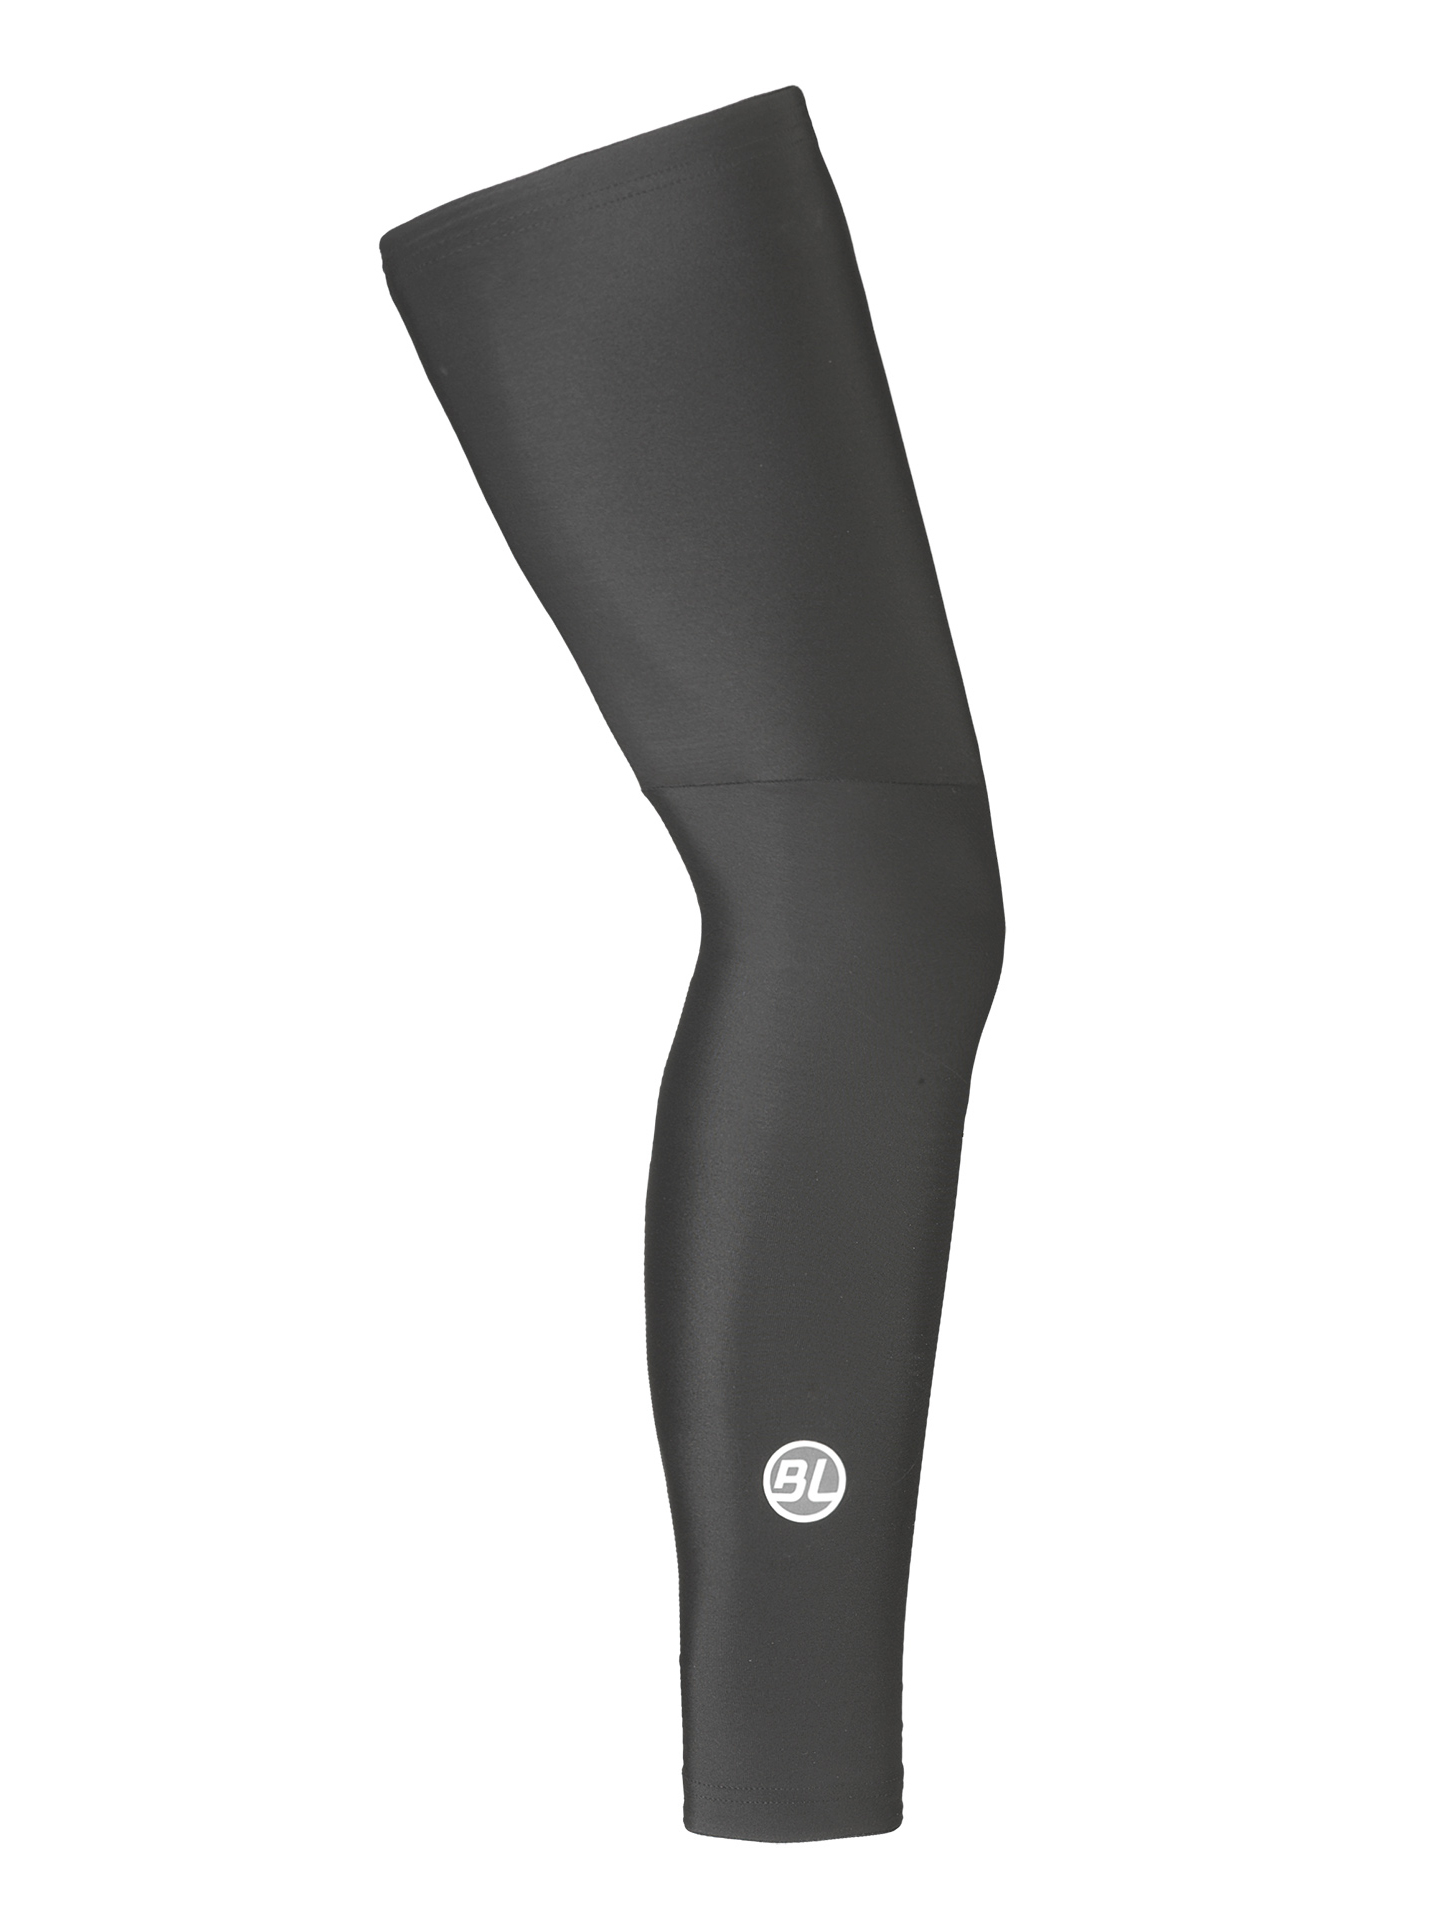 Утеплитель ног Bicycle Line FIANDRE, black (черный), M